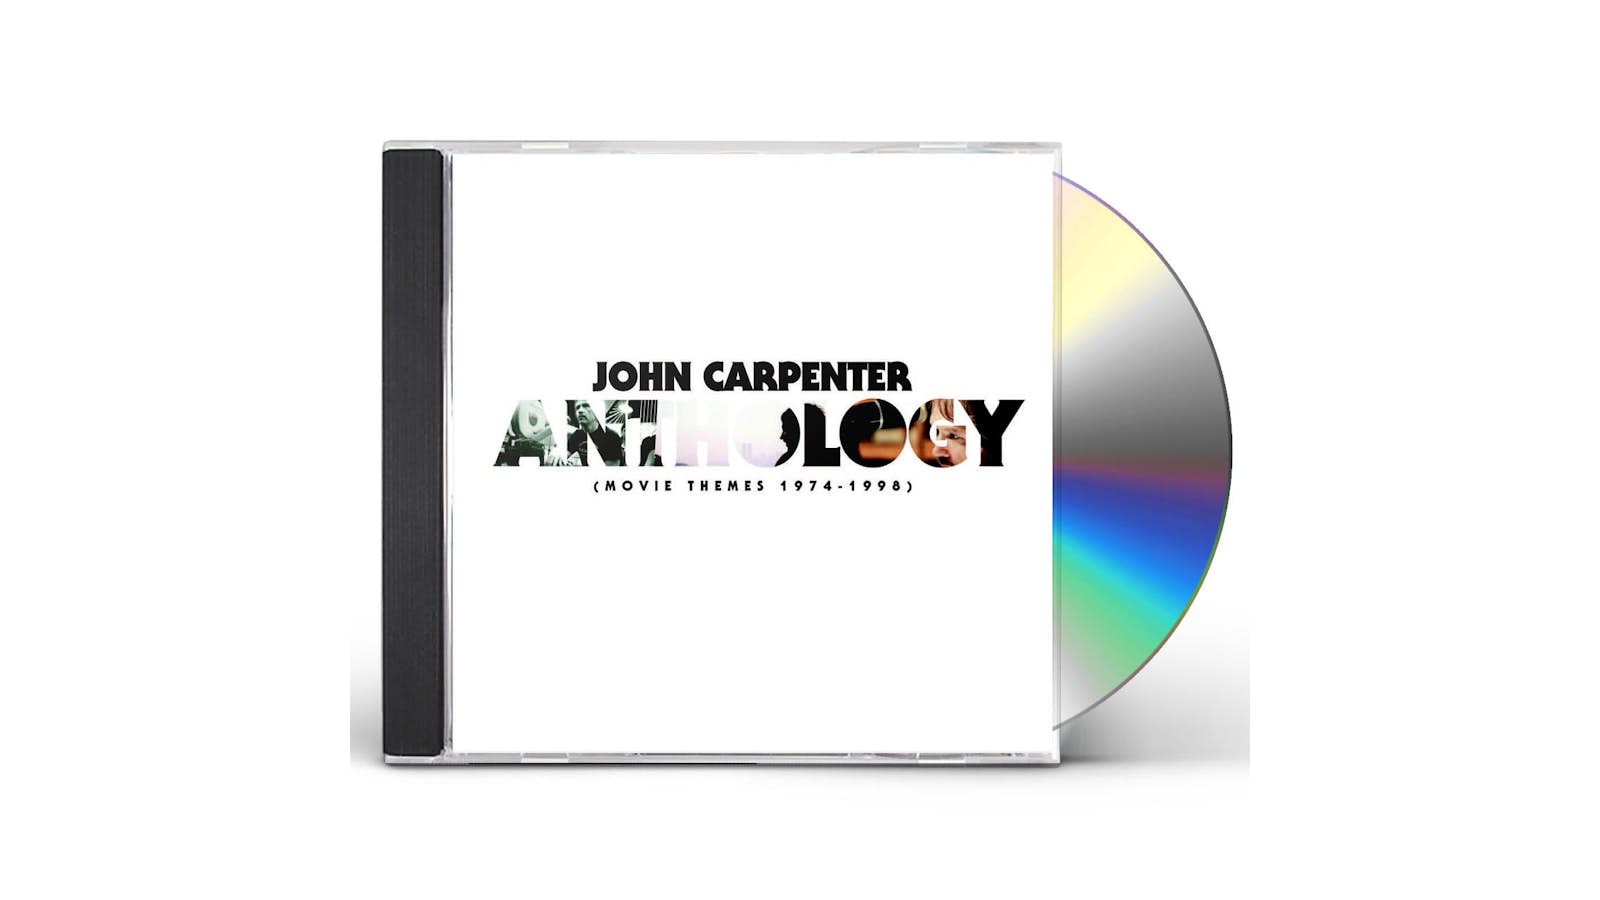 John Carpenter: Anthology II: Movie Themes 1976-1988 – Sacred